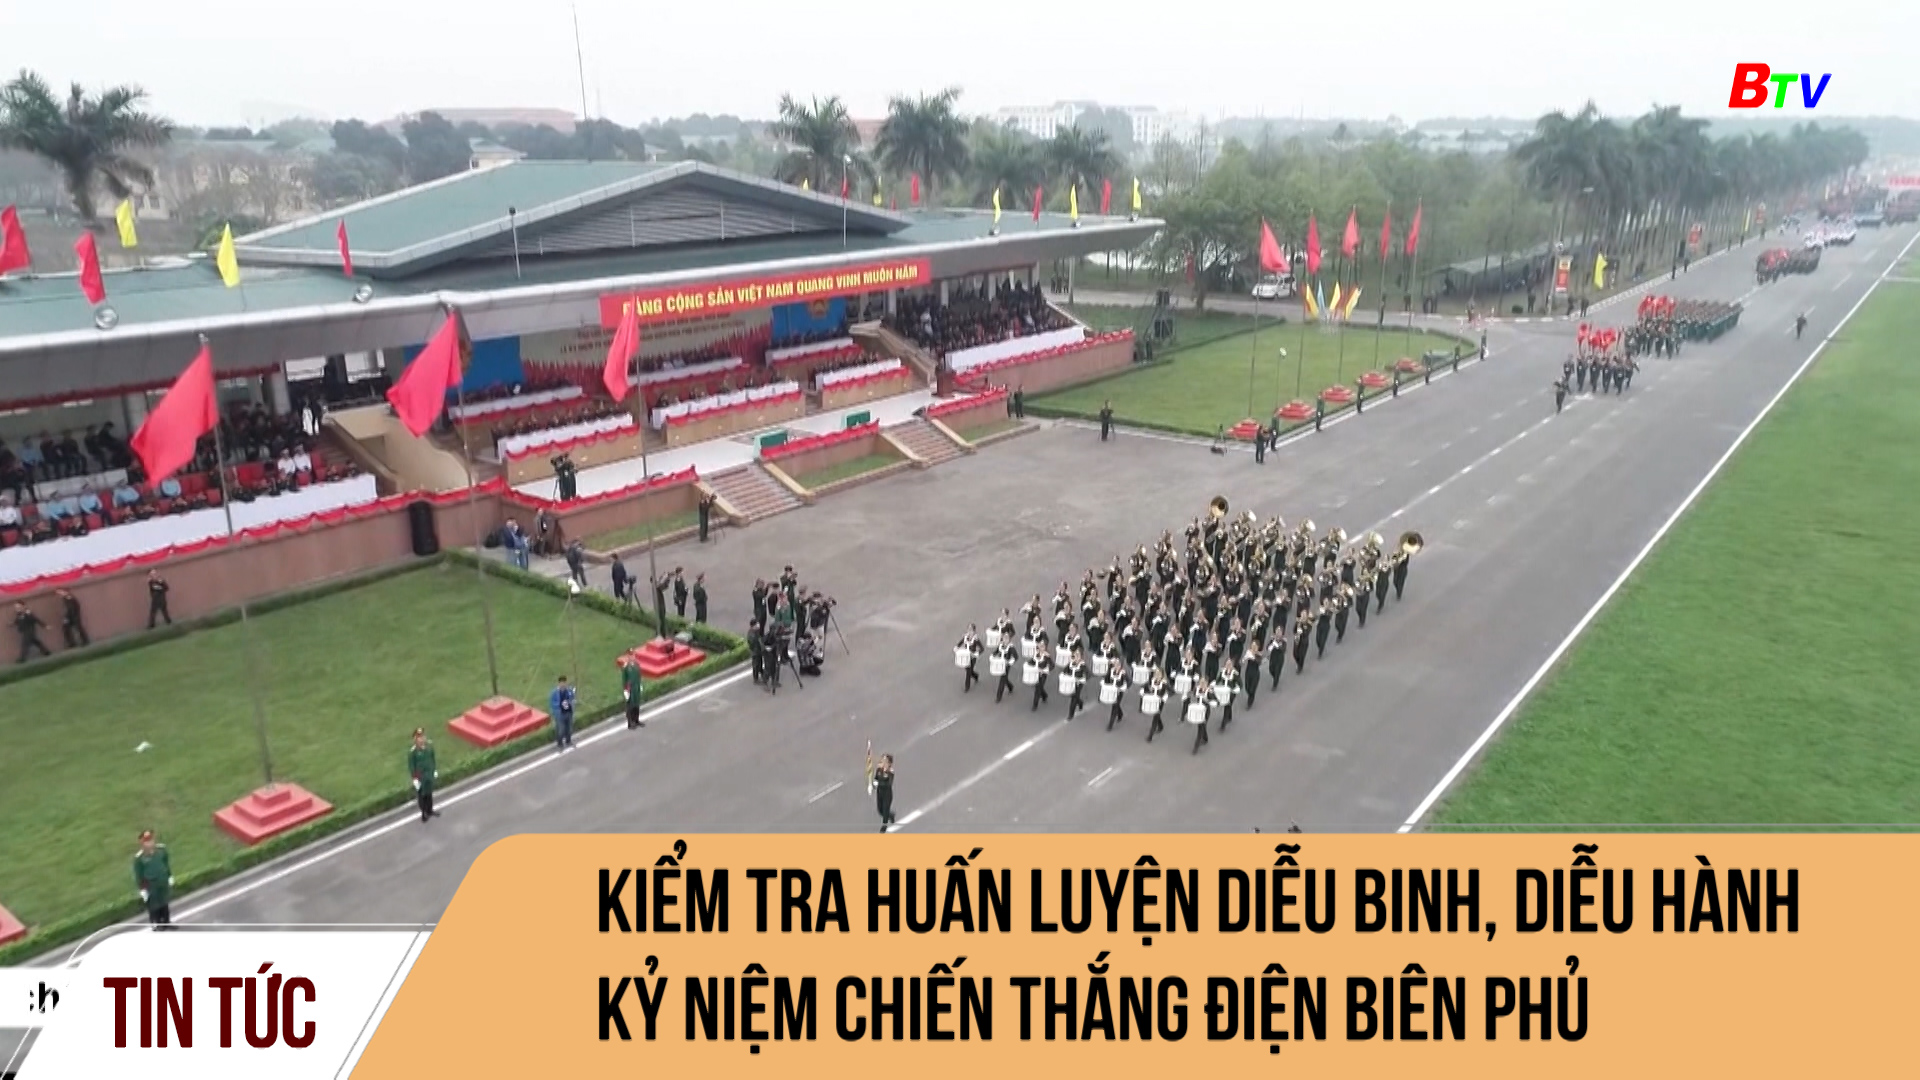 Kiểm tra huấn luyện diễu binh, diễu hành kỷ niệm chiến thắng Điện Biên Phủ	